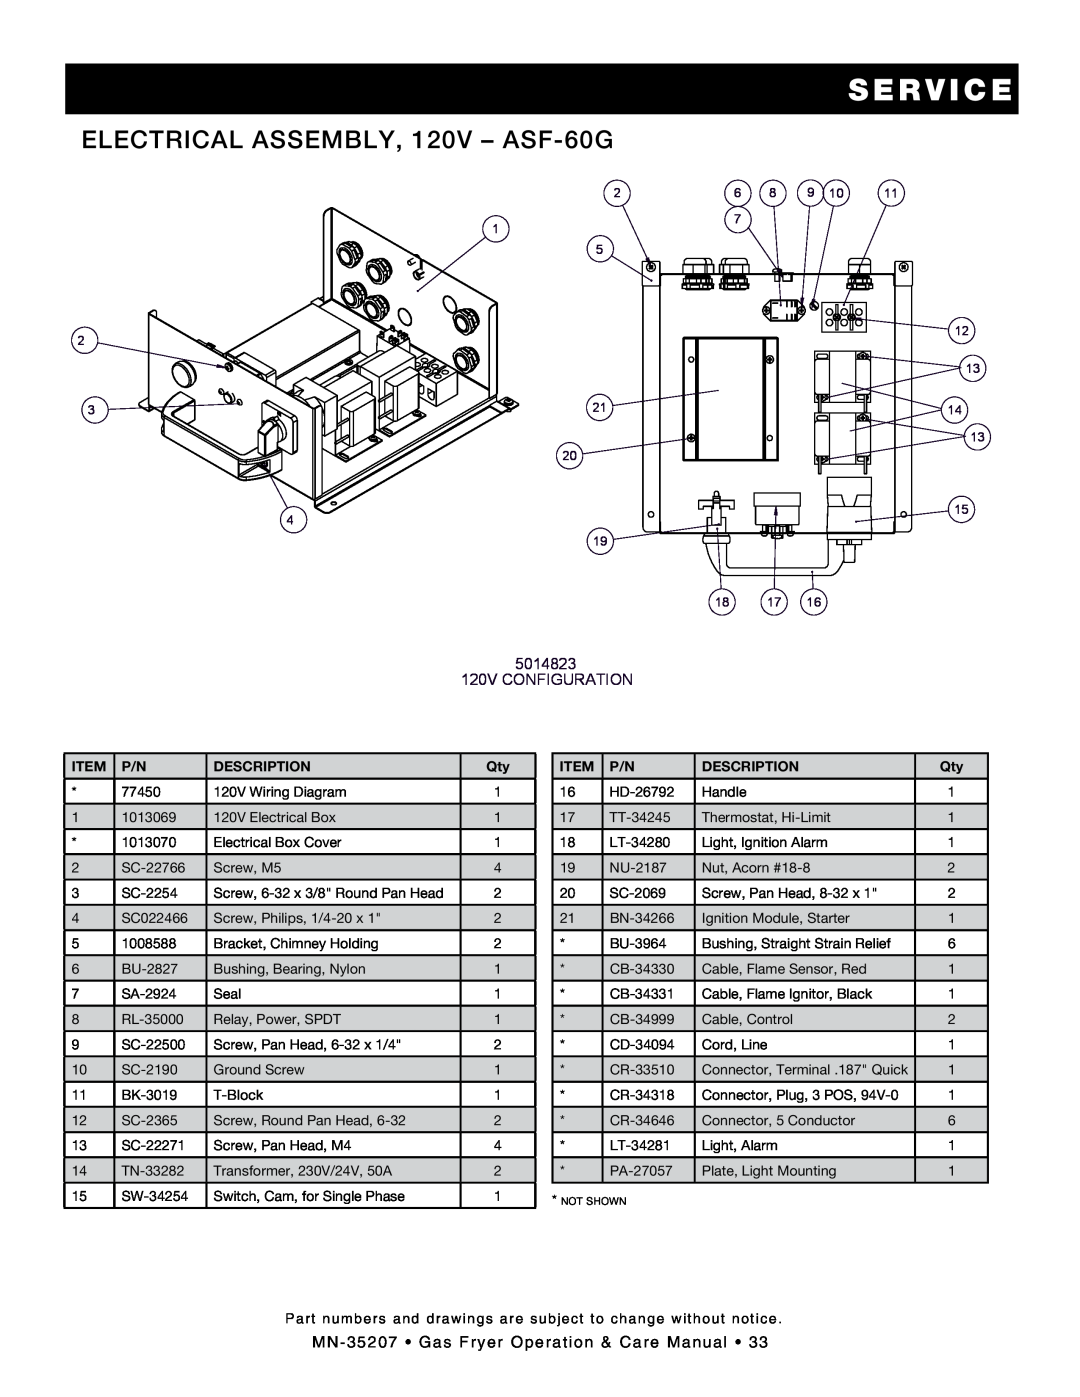 Alto-Shaam Gas Fryer manual Electrical Assembly, 120V - ASF-60G, s e r v i c e, 5014823 120V CONFIGURATION, Description 